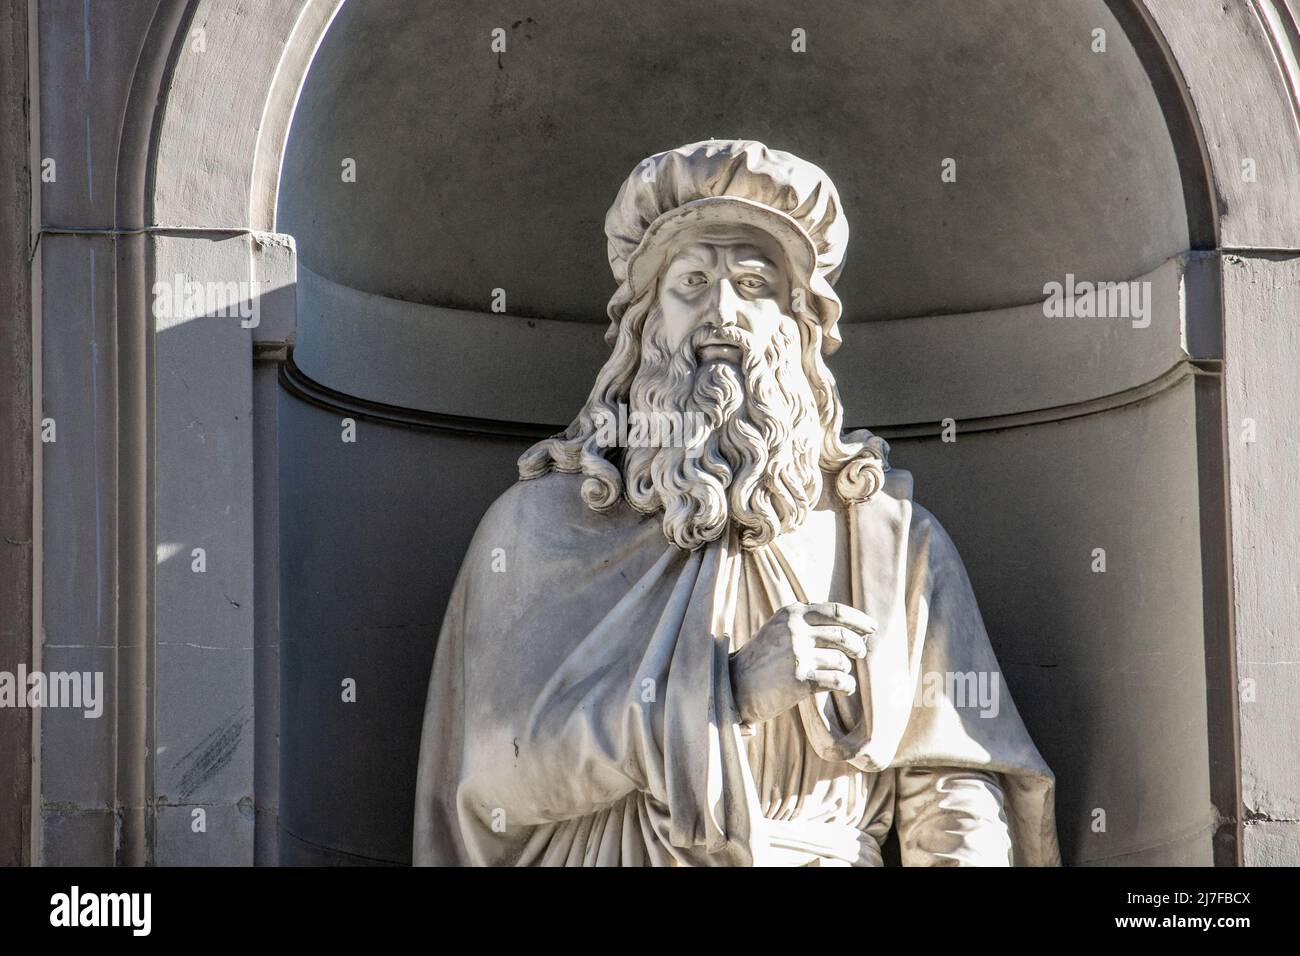 Statue of Leonardo da Vinci, Piazzale degli Uffizi, Florence, Italy Stock Photo